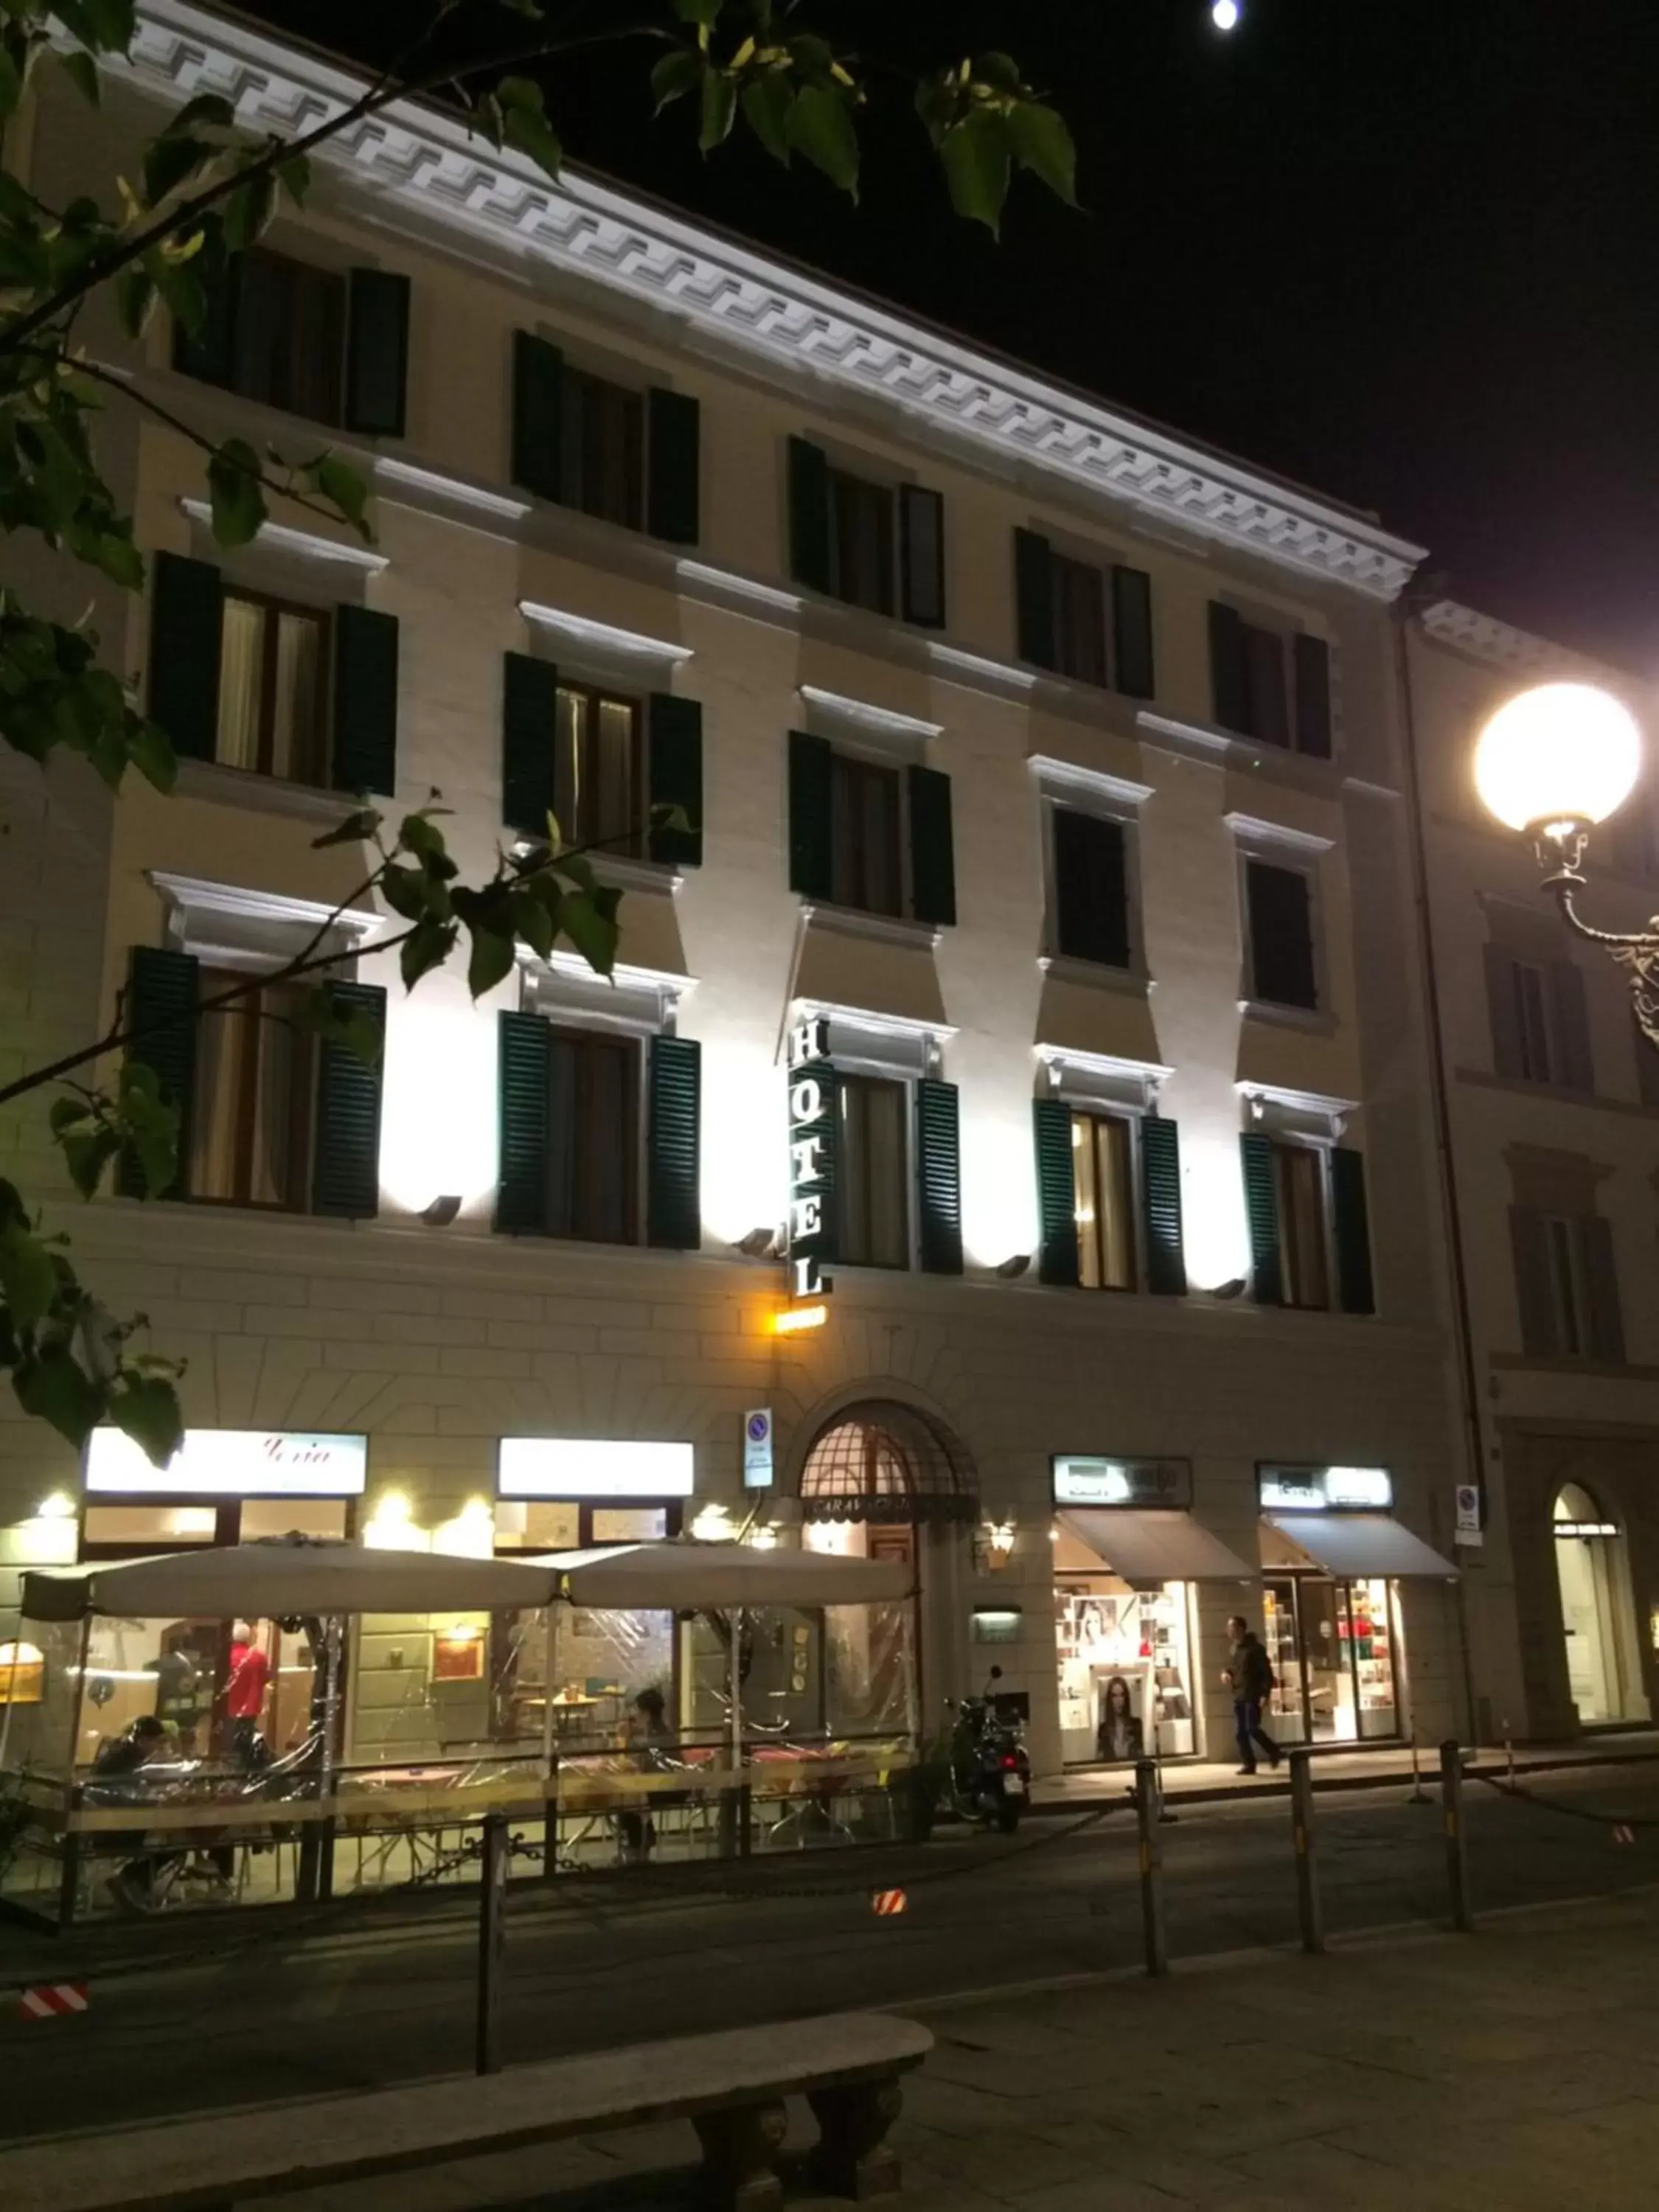 Property building, Facade/Entrance in Hotel Caravaggio